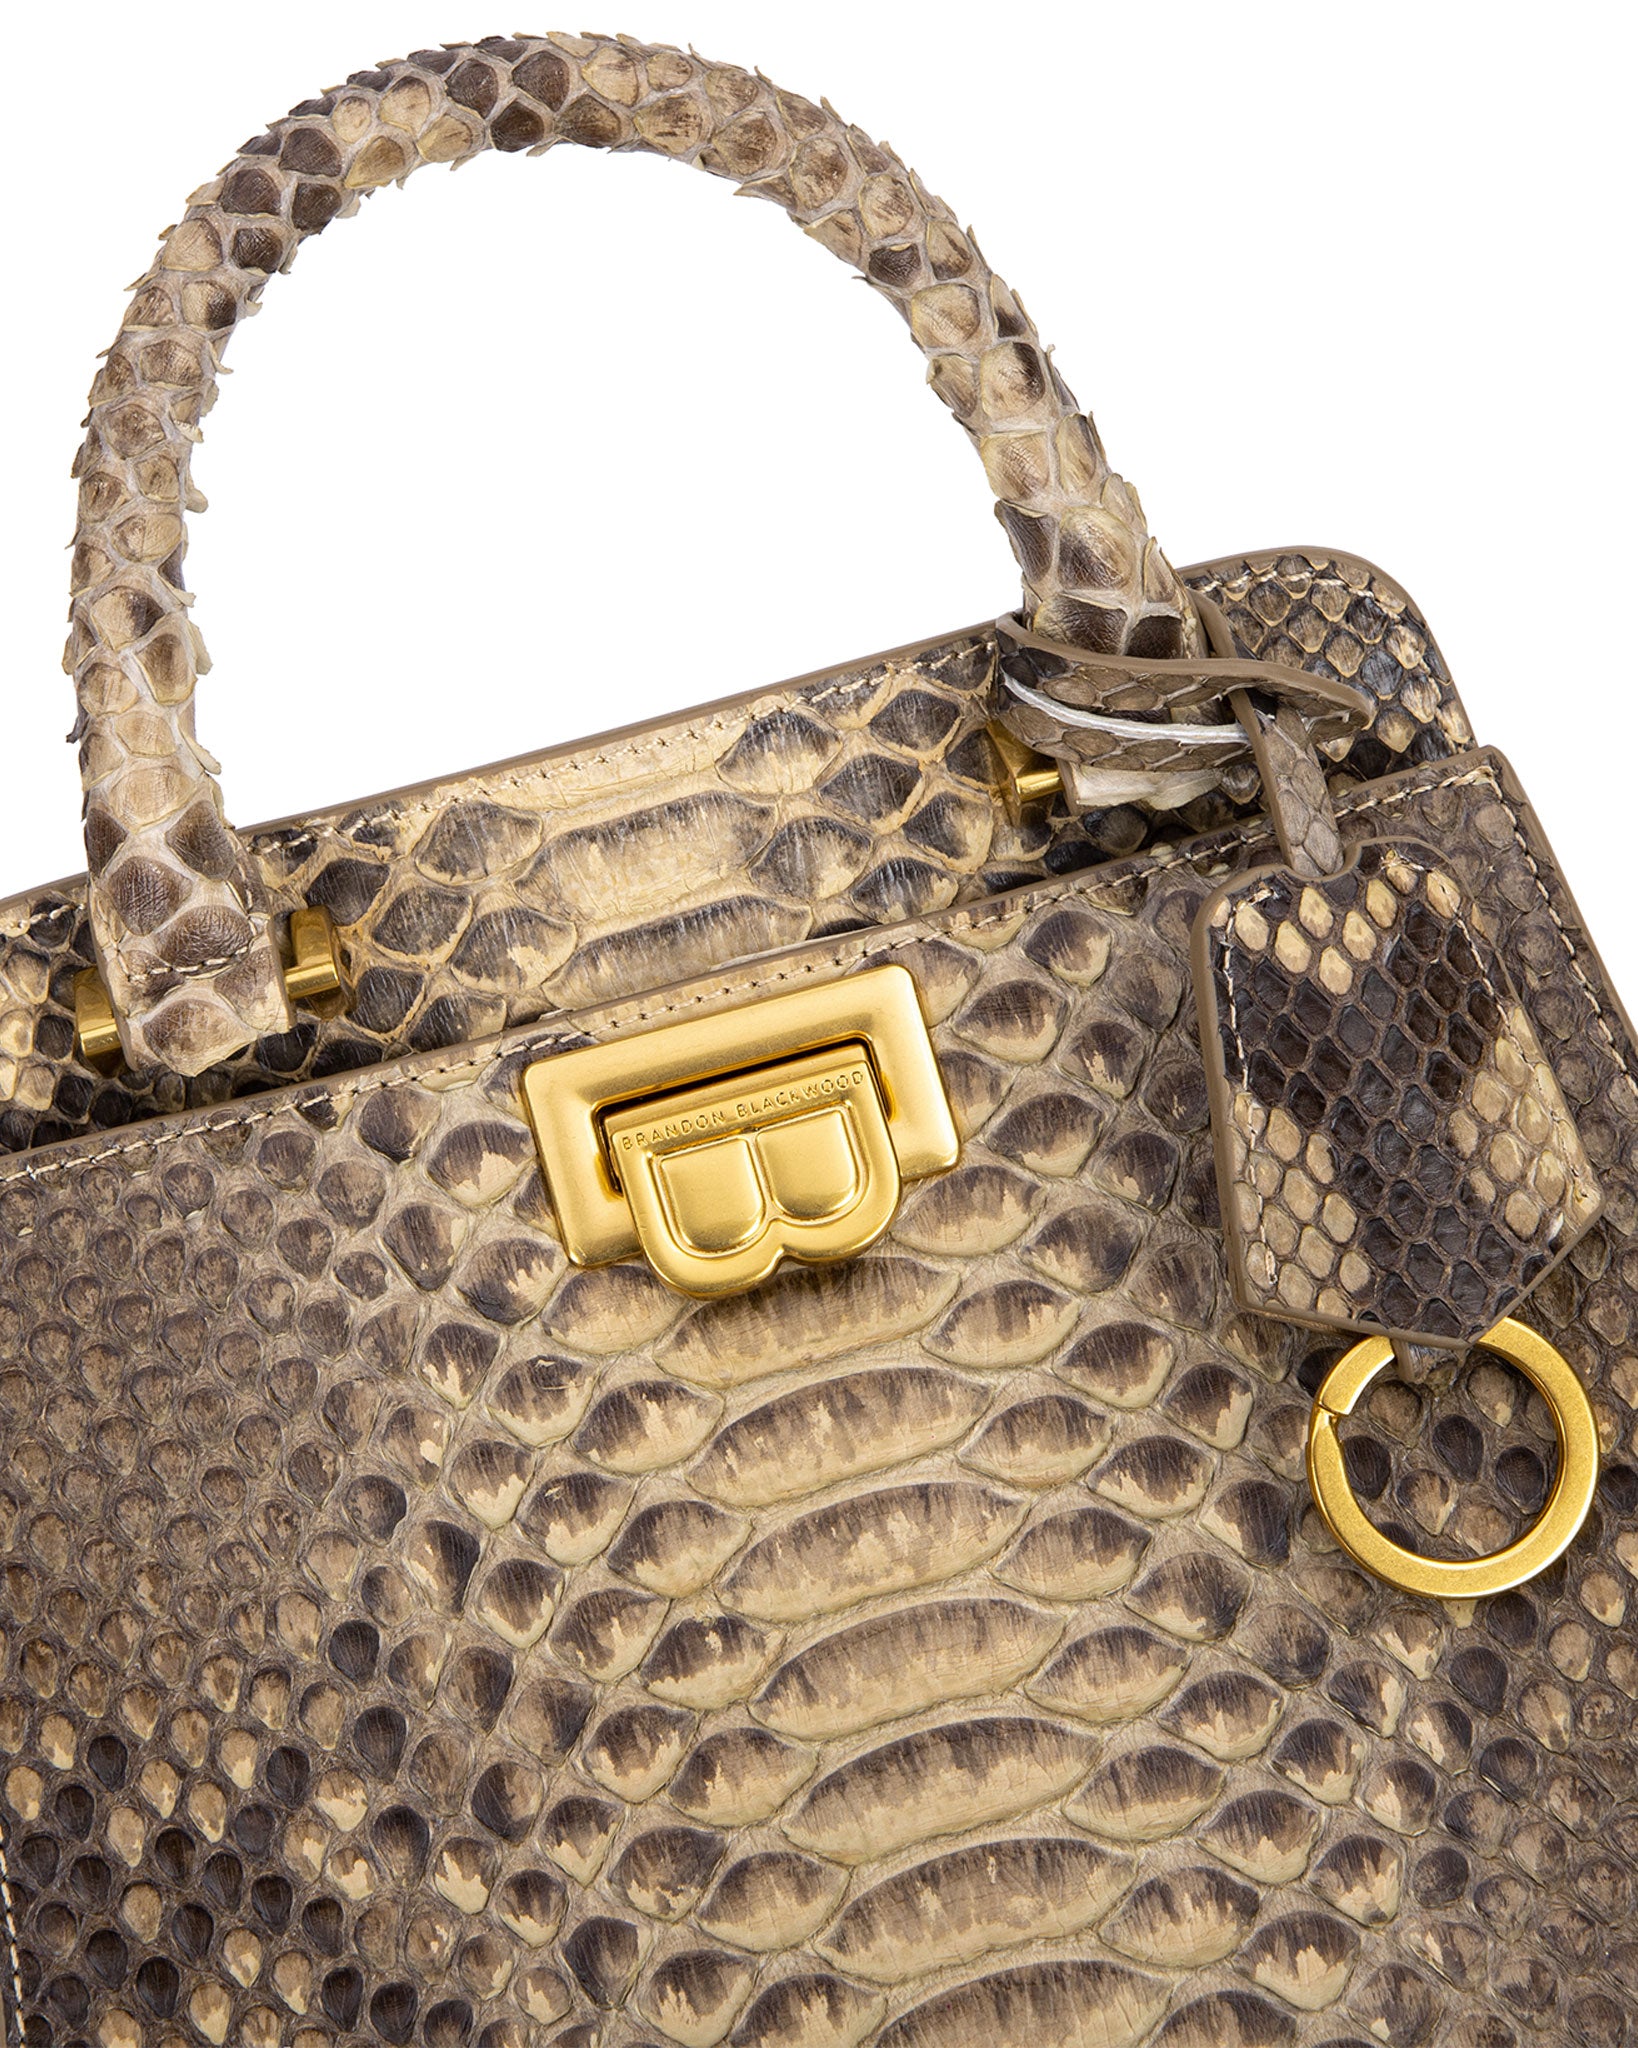 snake handbag